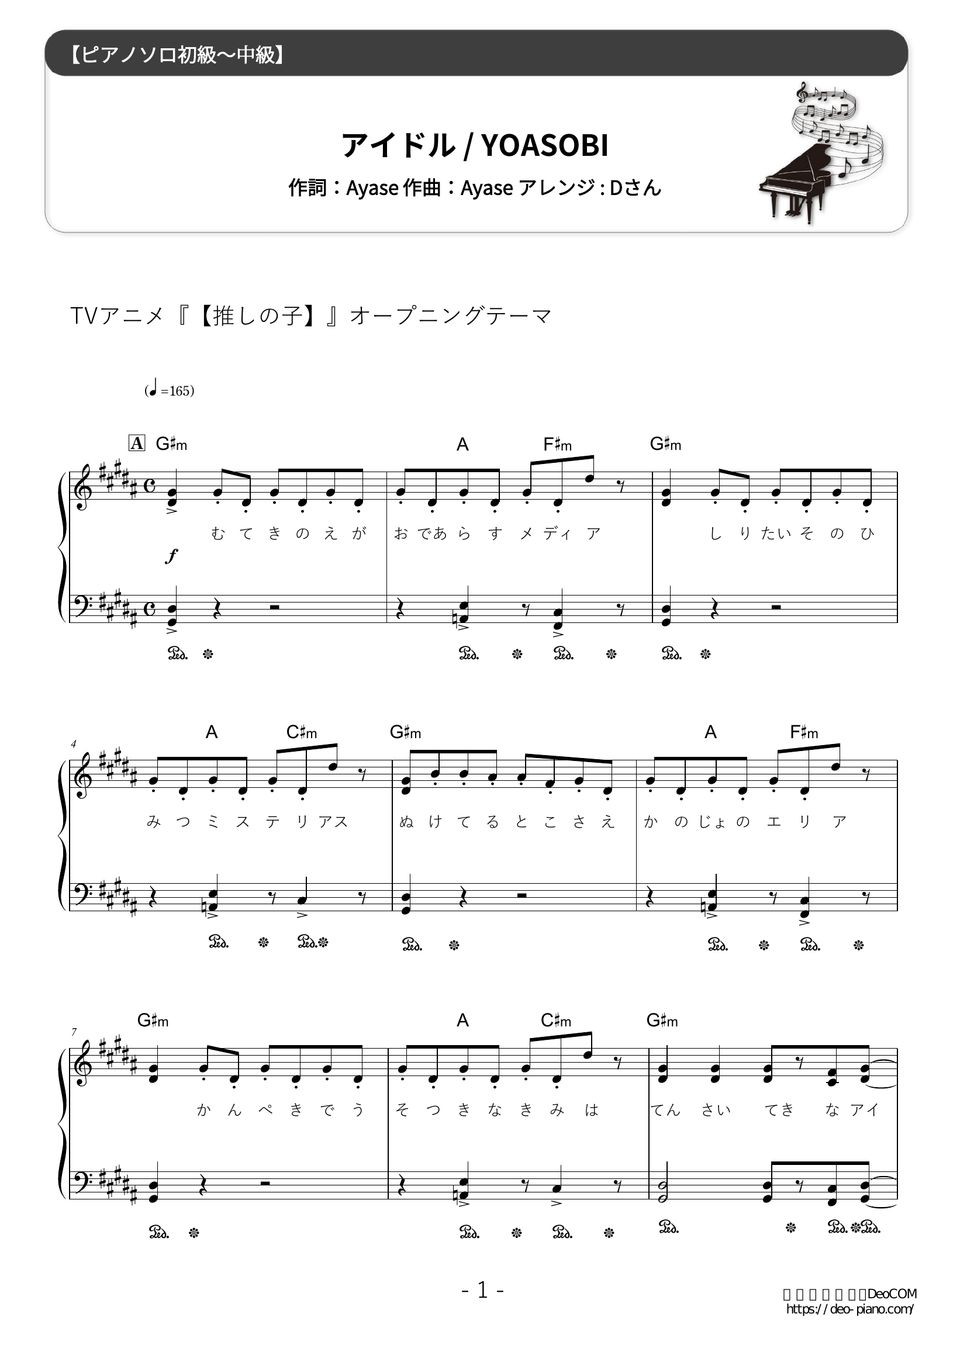 YOASOBI - アイドル (難易度/歌詞・コード・ペダル付き) 楽譜 by Dさん